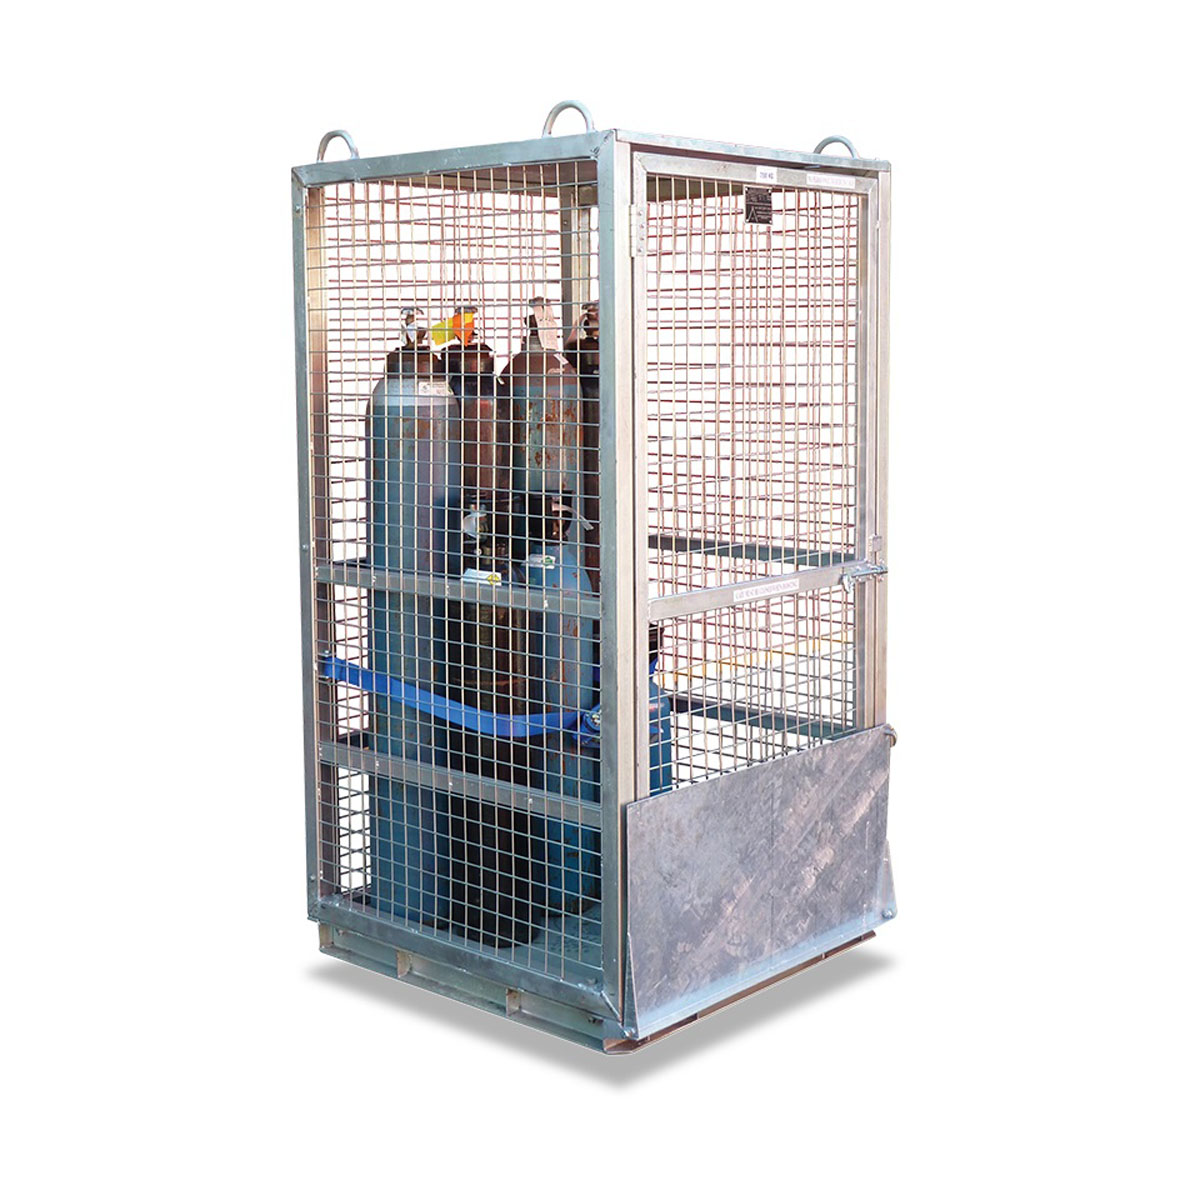 Gas Cylinder Cage Model Image